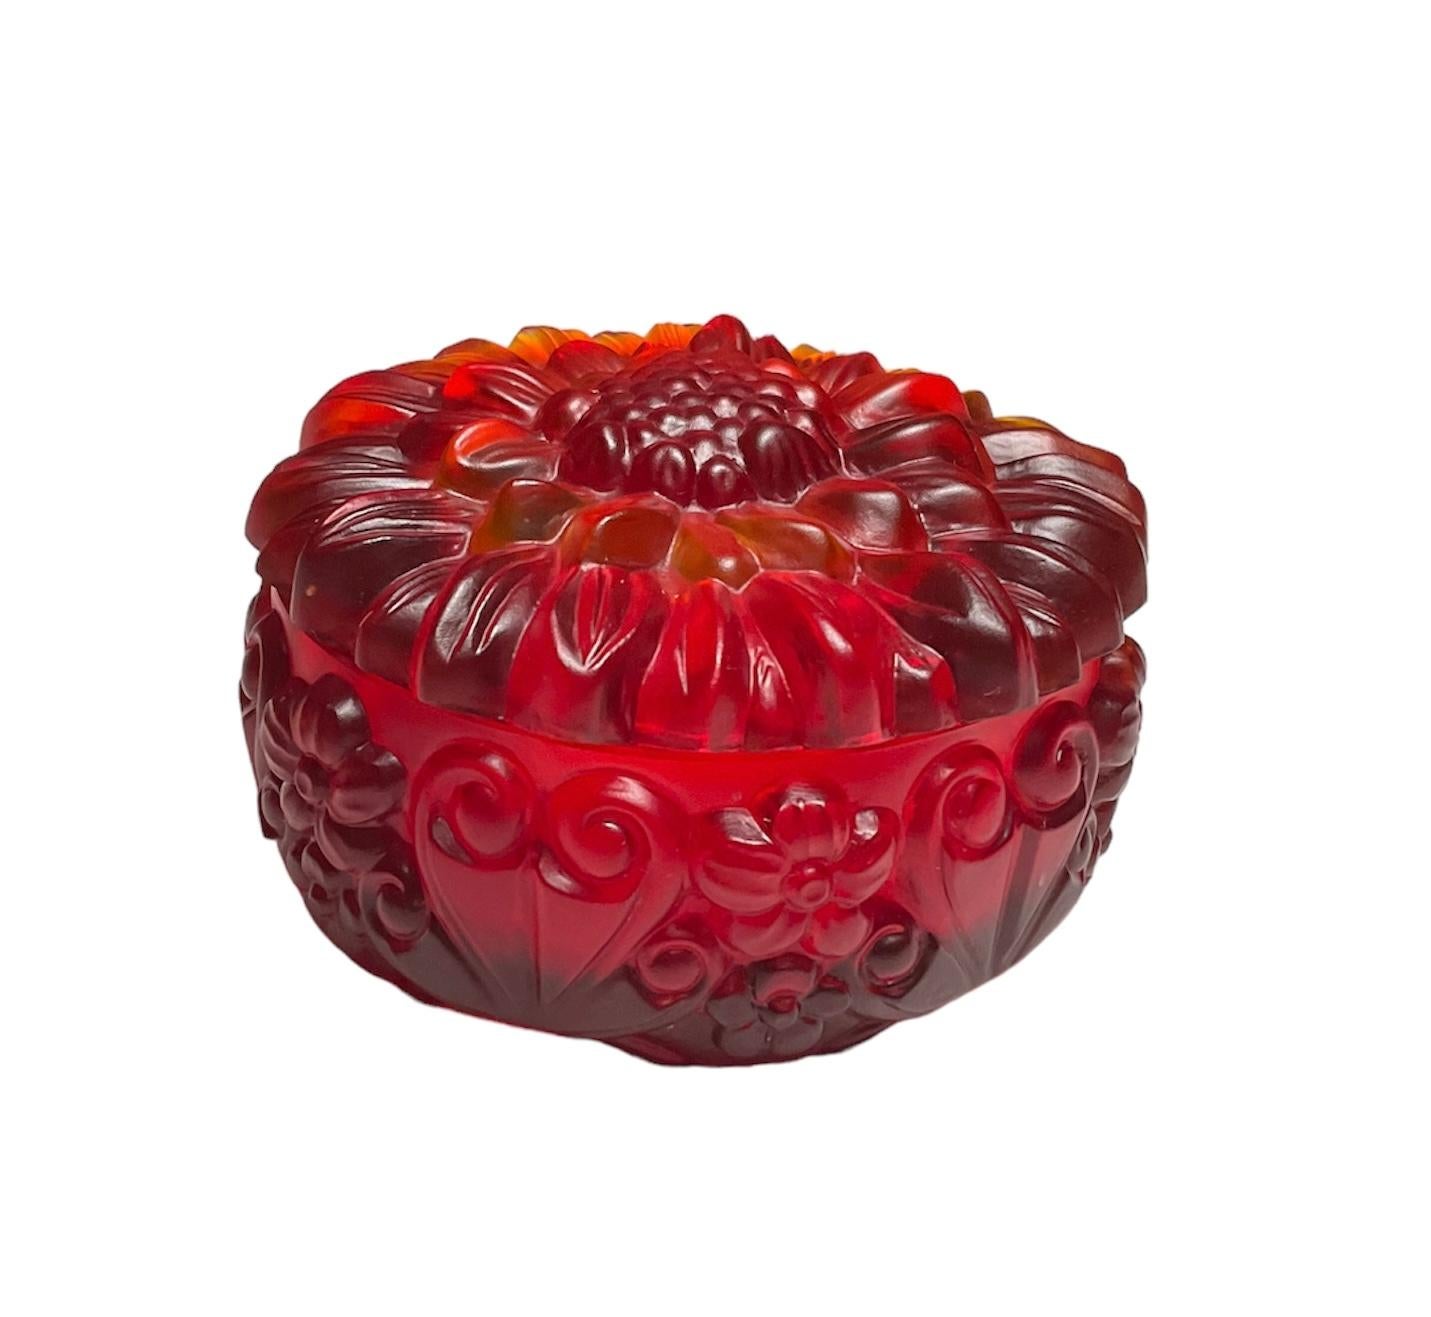 Dies ist ein H.Hoffman Red Glass Round Powder, Schmuck oder Vanity Lidded Box. Es zeigt eine runde Schale, die mit einem Reliefmuster aus Blumen und Herzen verziert ist. Außerdem ist der Deckel mit einem Relief einer großen Pfingstrose verziert.